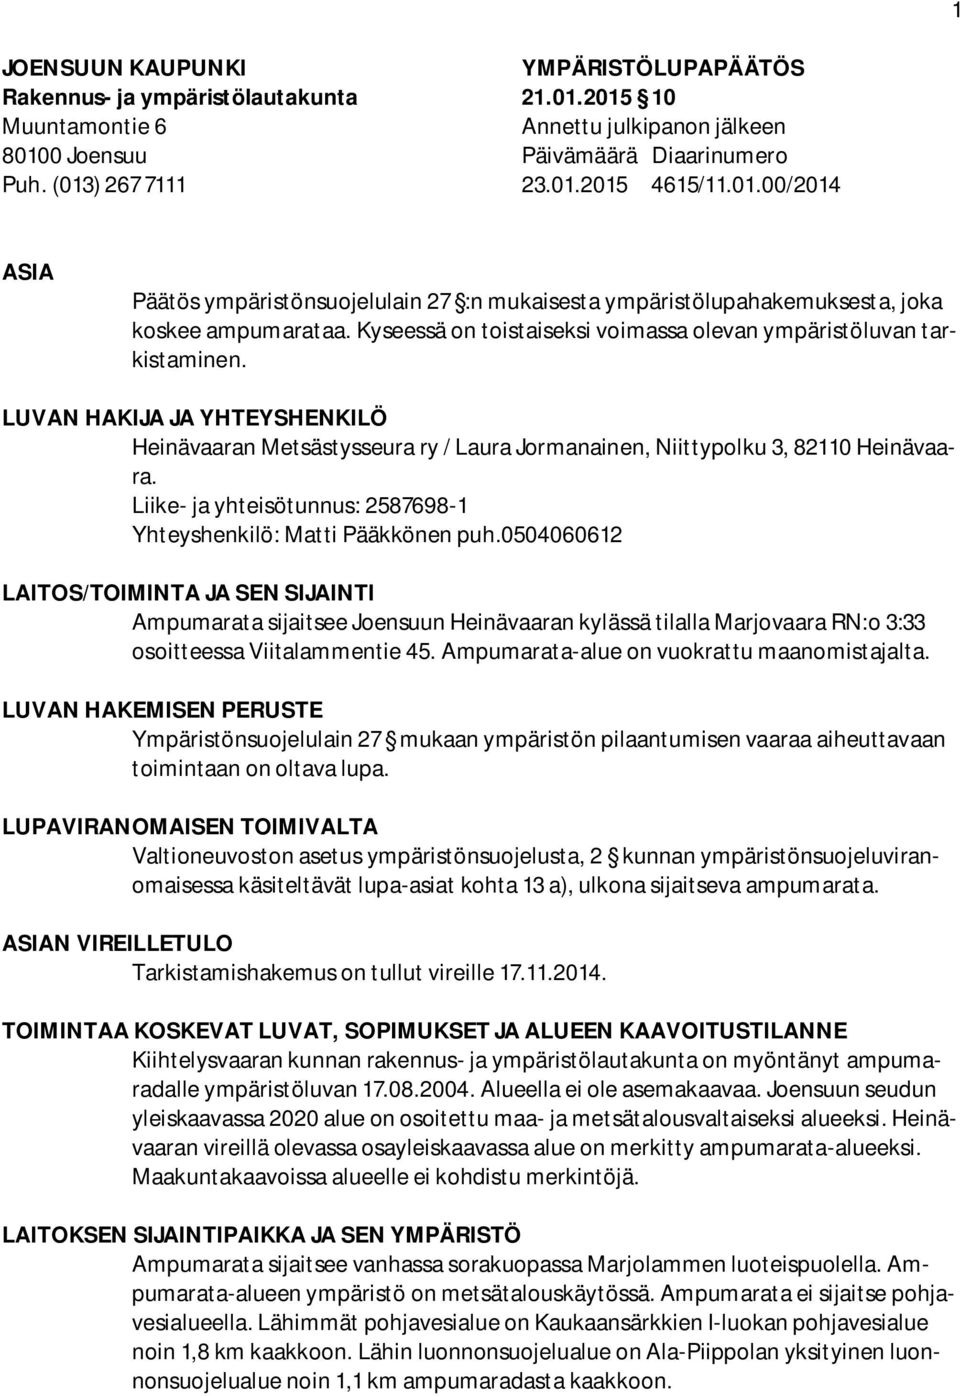 LUVAN HAKIJA JA YHTEYSHENKILÖ Heinävaaran Metsästysseura ry / Laura Jormanainen, Niittypolku 3, 82110 Heinävaara. Liike- ja yhteisötunnus: 2587698-1 Yhteyshenkilö: Matti Pääkkönen puh.